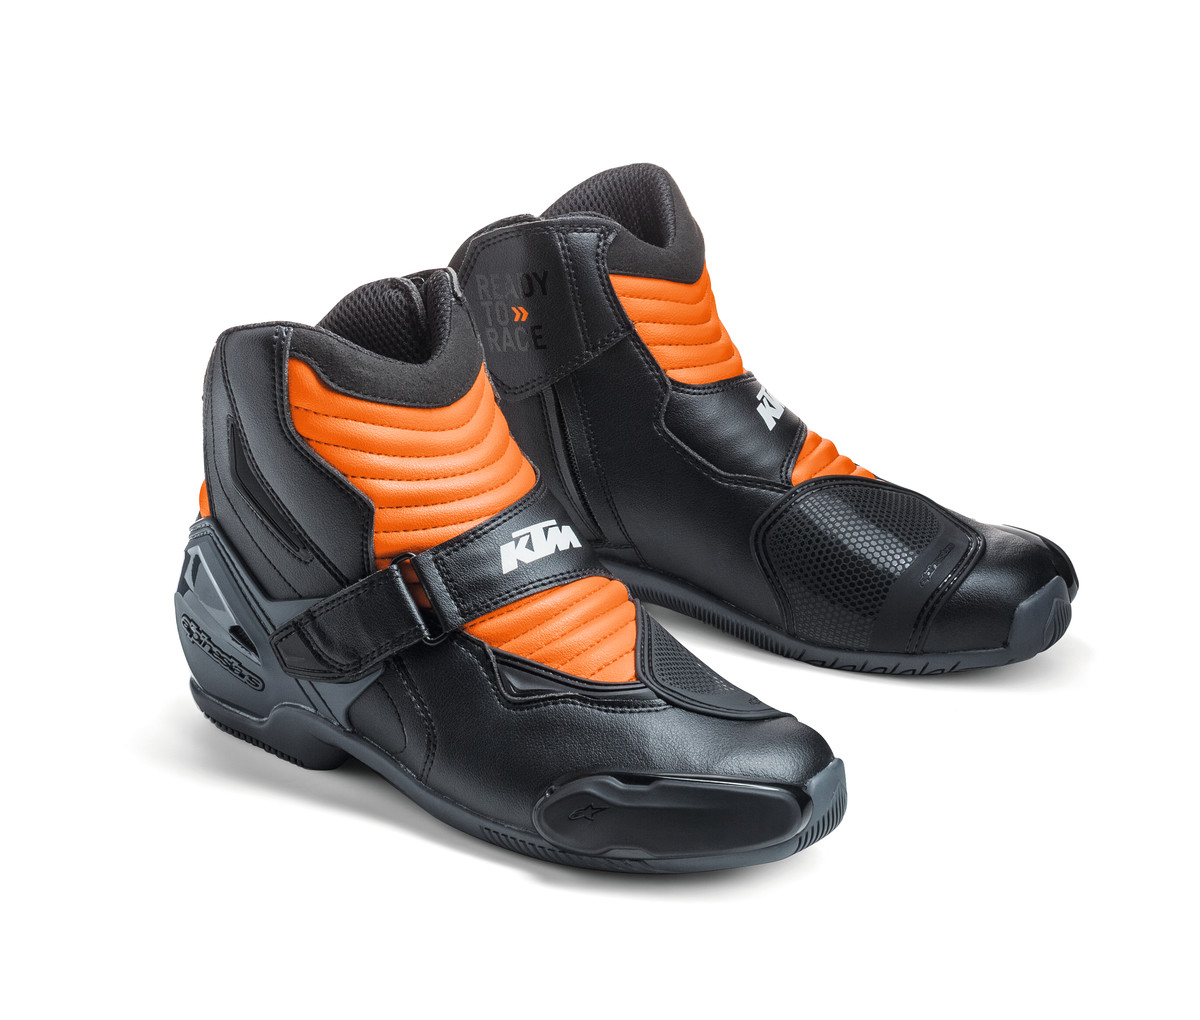 S-MX 1 R Shoes Shoe size 41